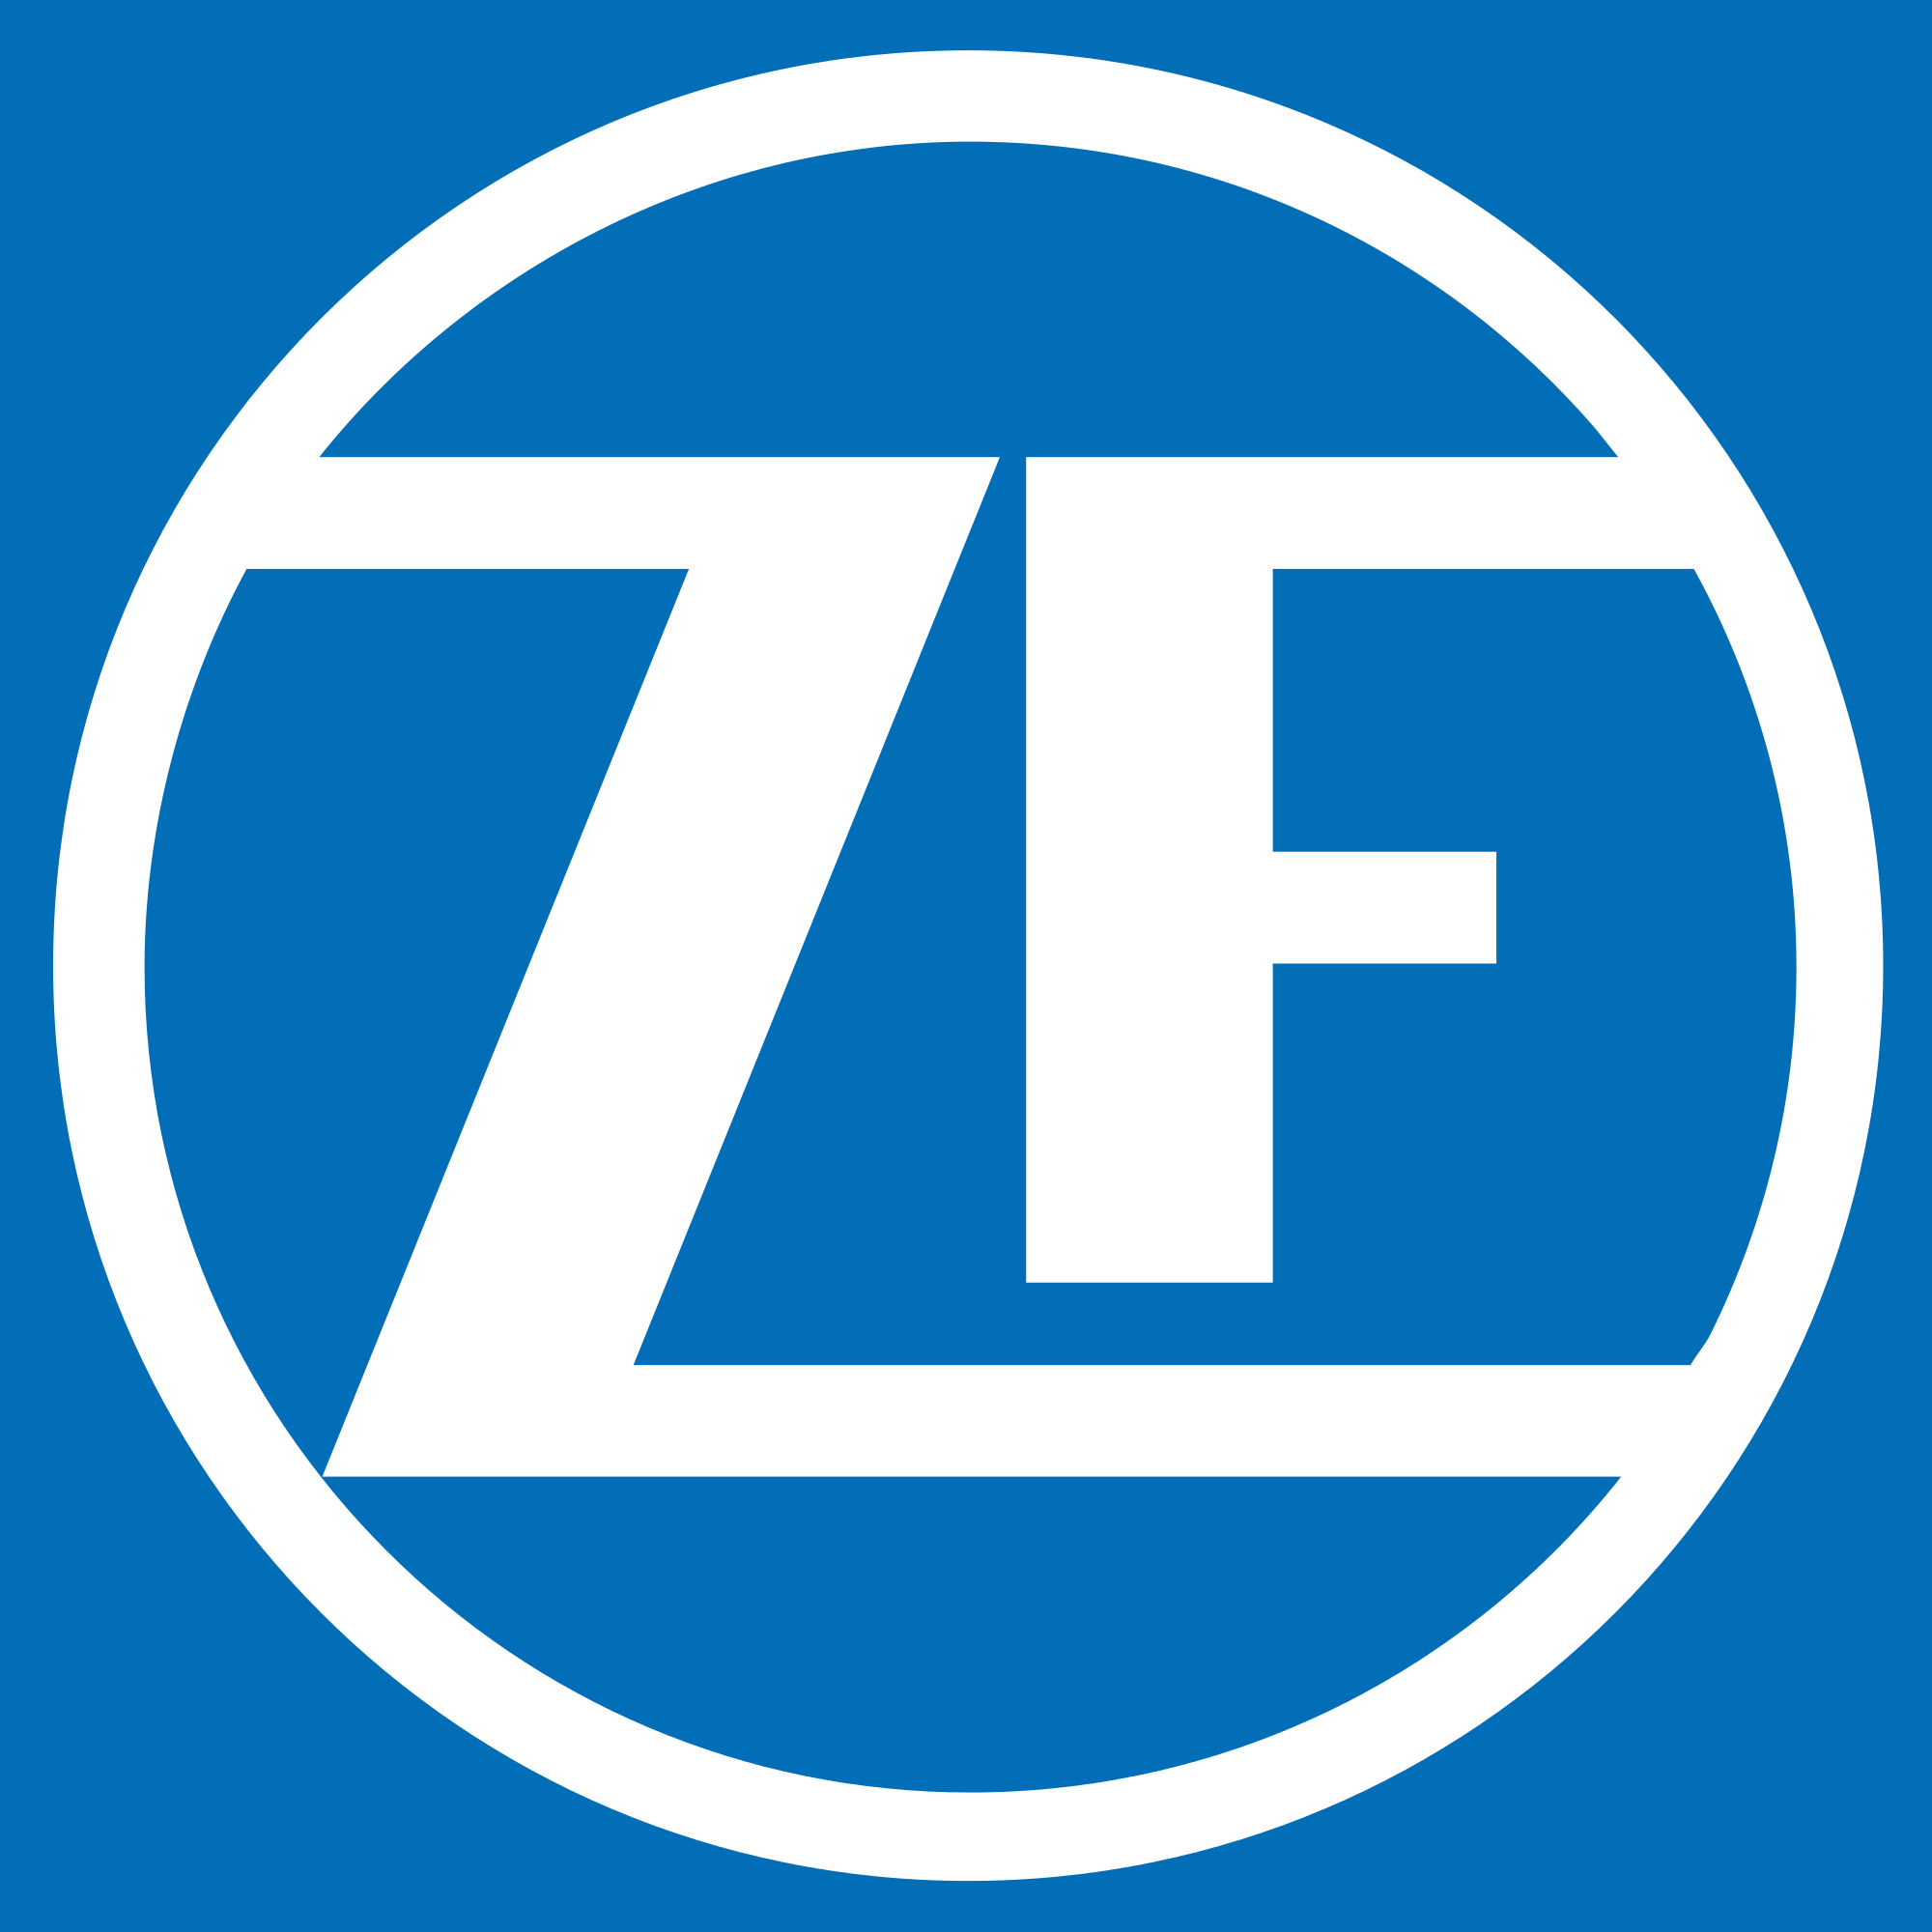 ZF Wind Power, LLC